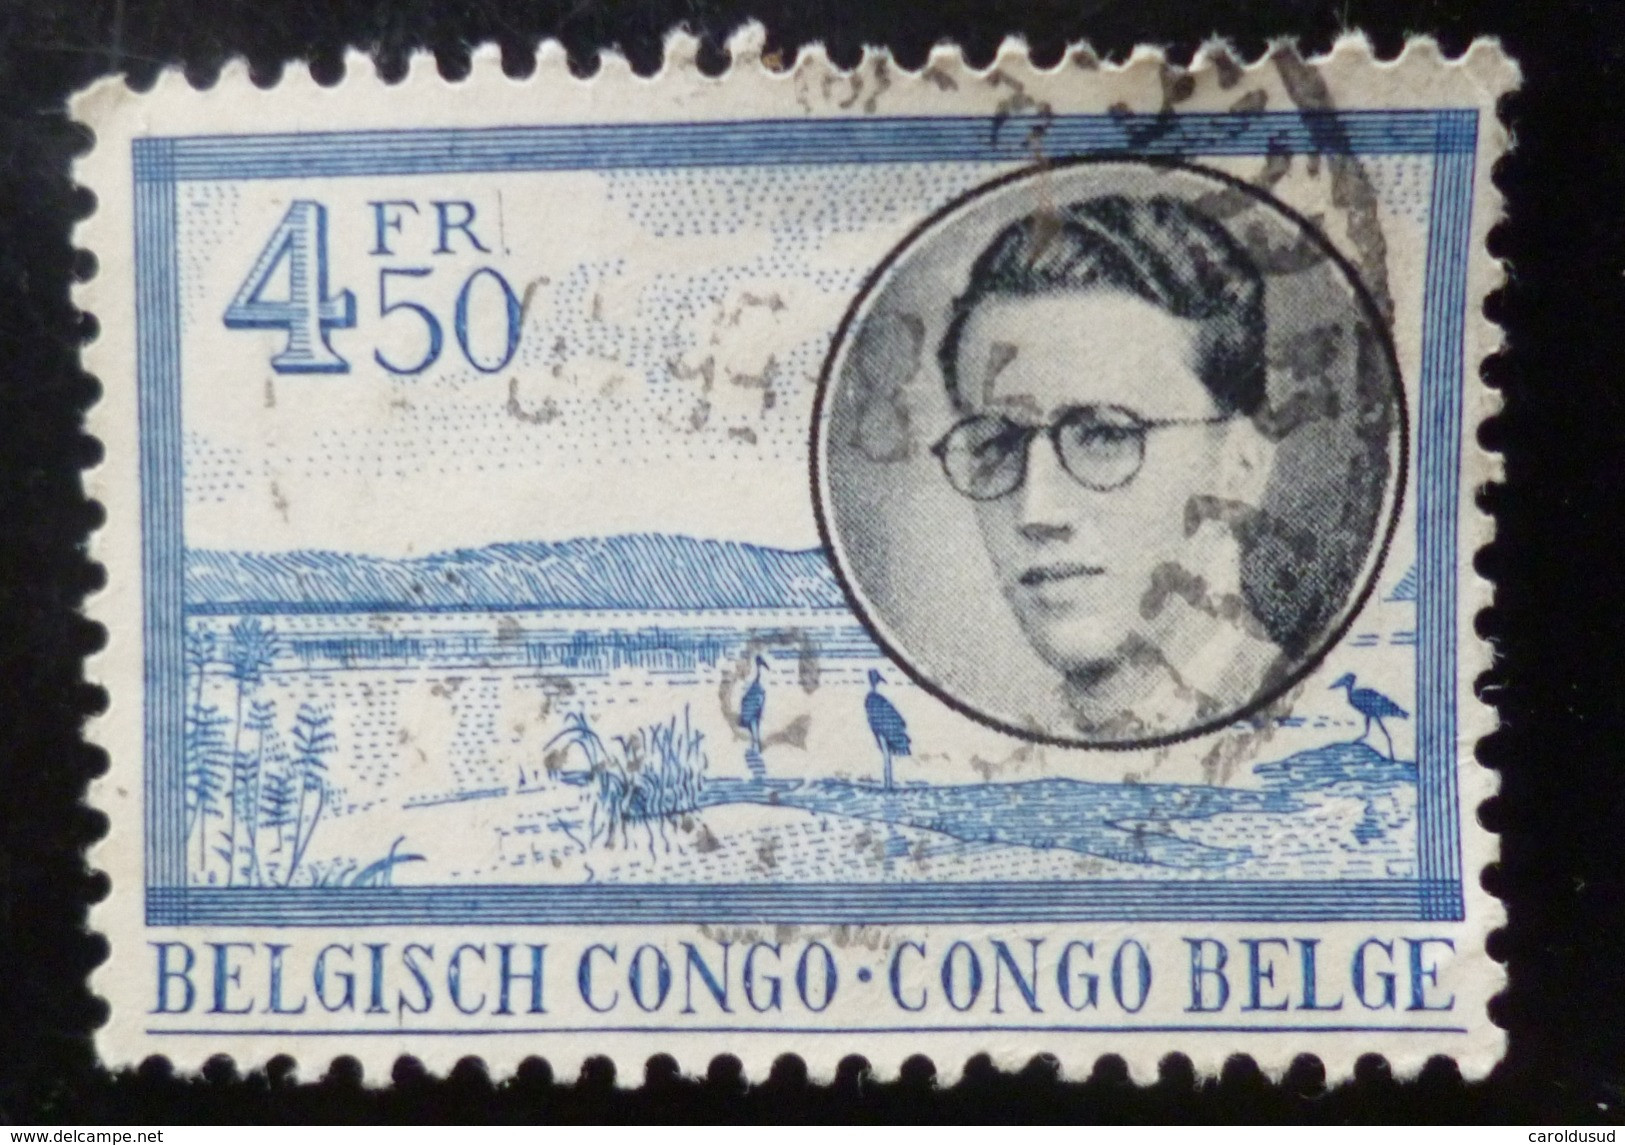 lot 33 x timbres 1 litho offerte timbre oblitere congo belge 3 x republique du congo BAUDOUIN 1x oblitere 2x bloc neuf